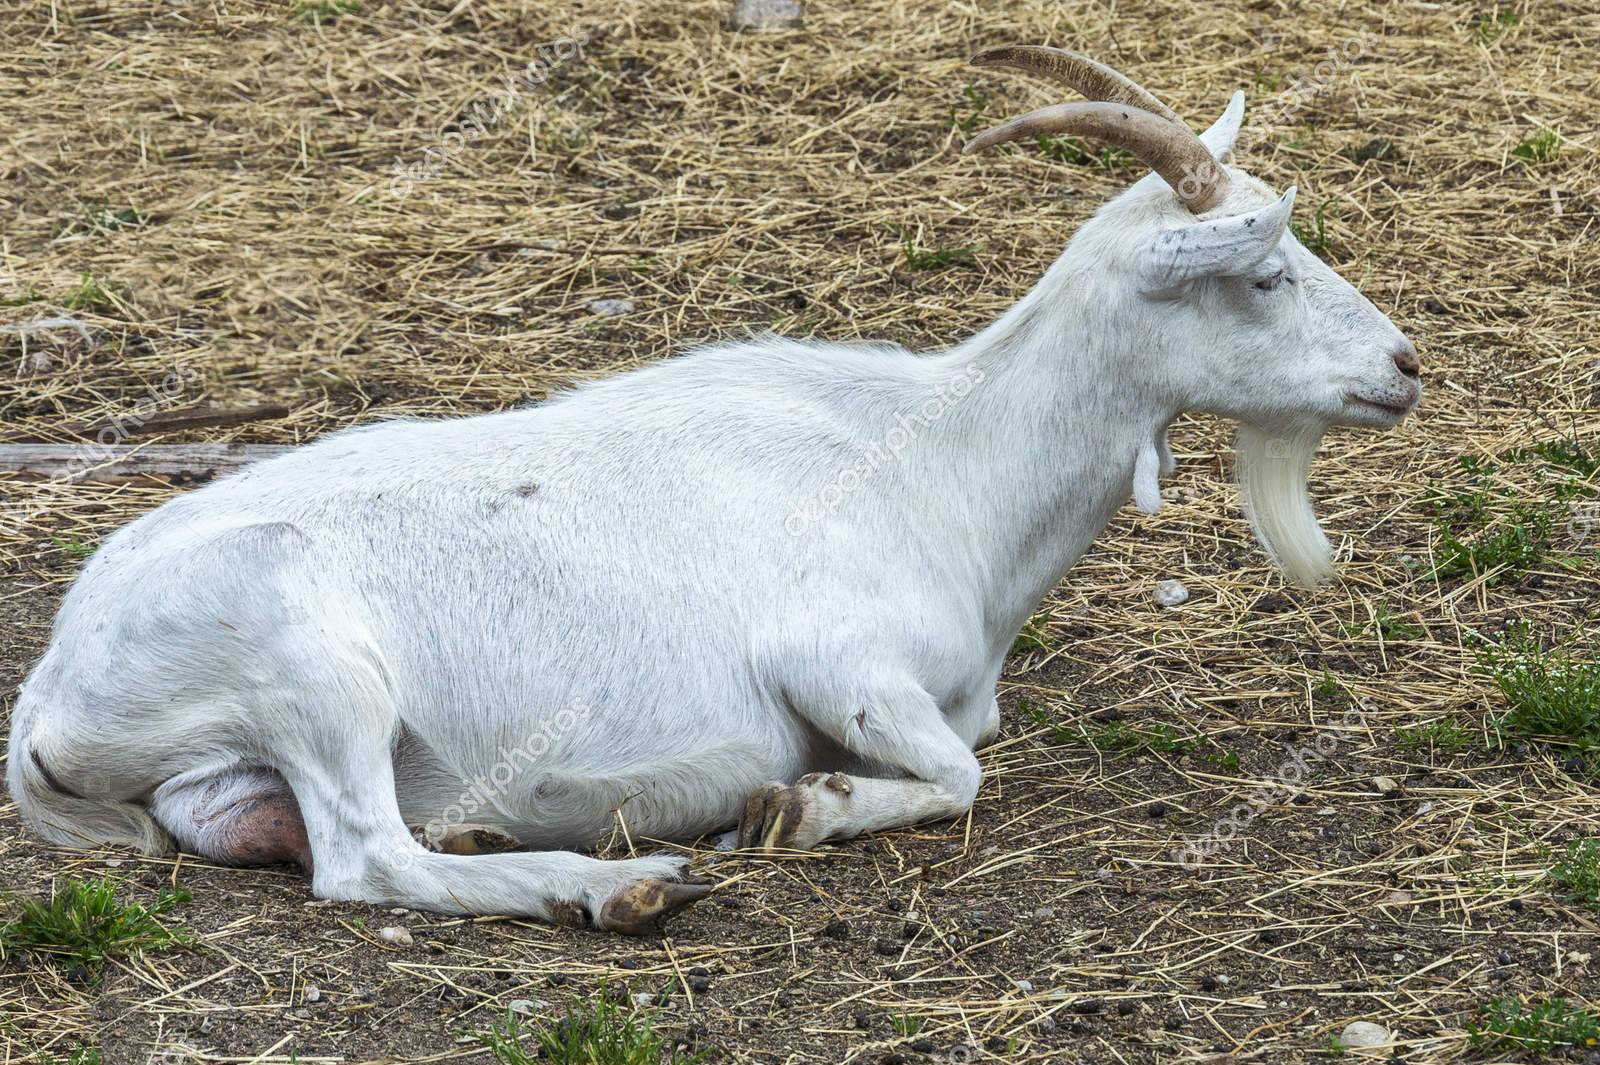 Методы осуществления обрезки копыт у коз